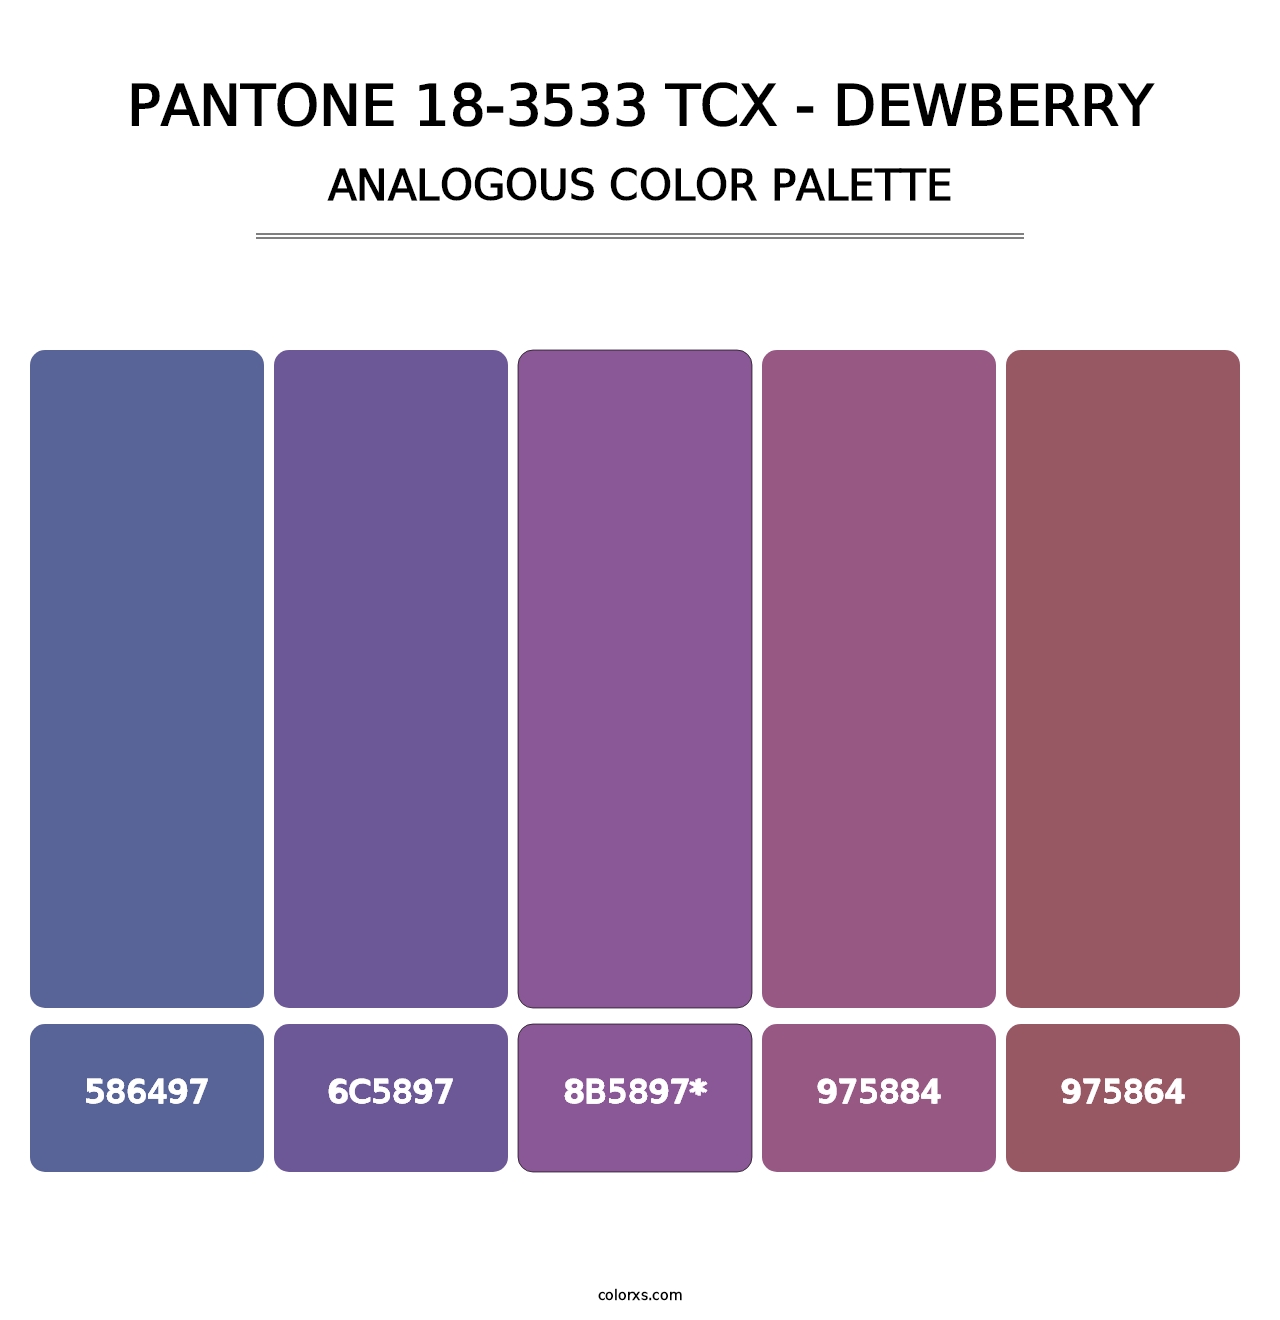 PANTONE 18-3533 TCX - Dewberry - Analogous Color Palette